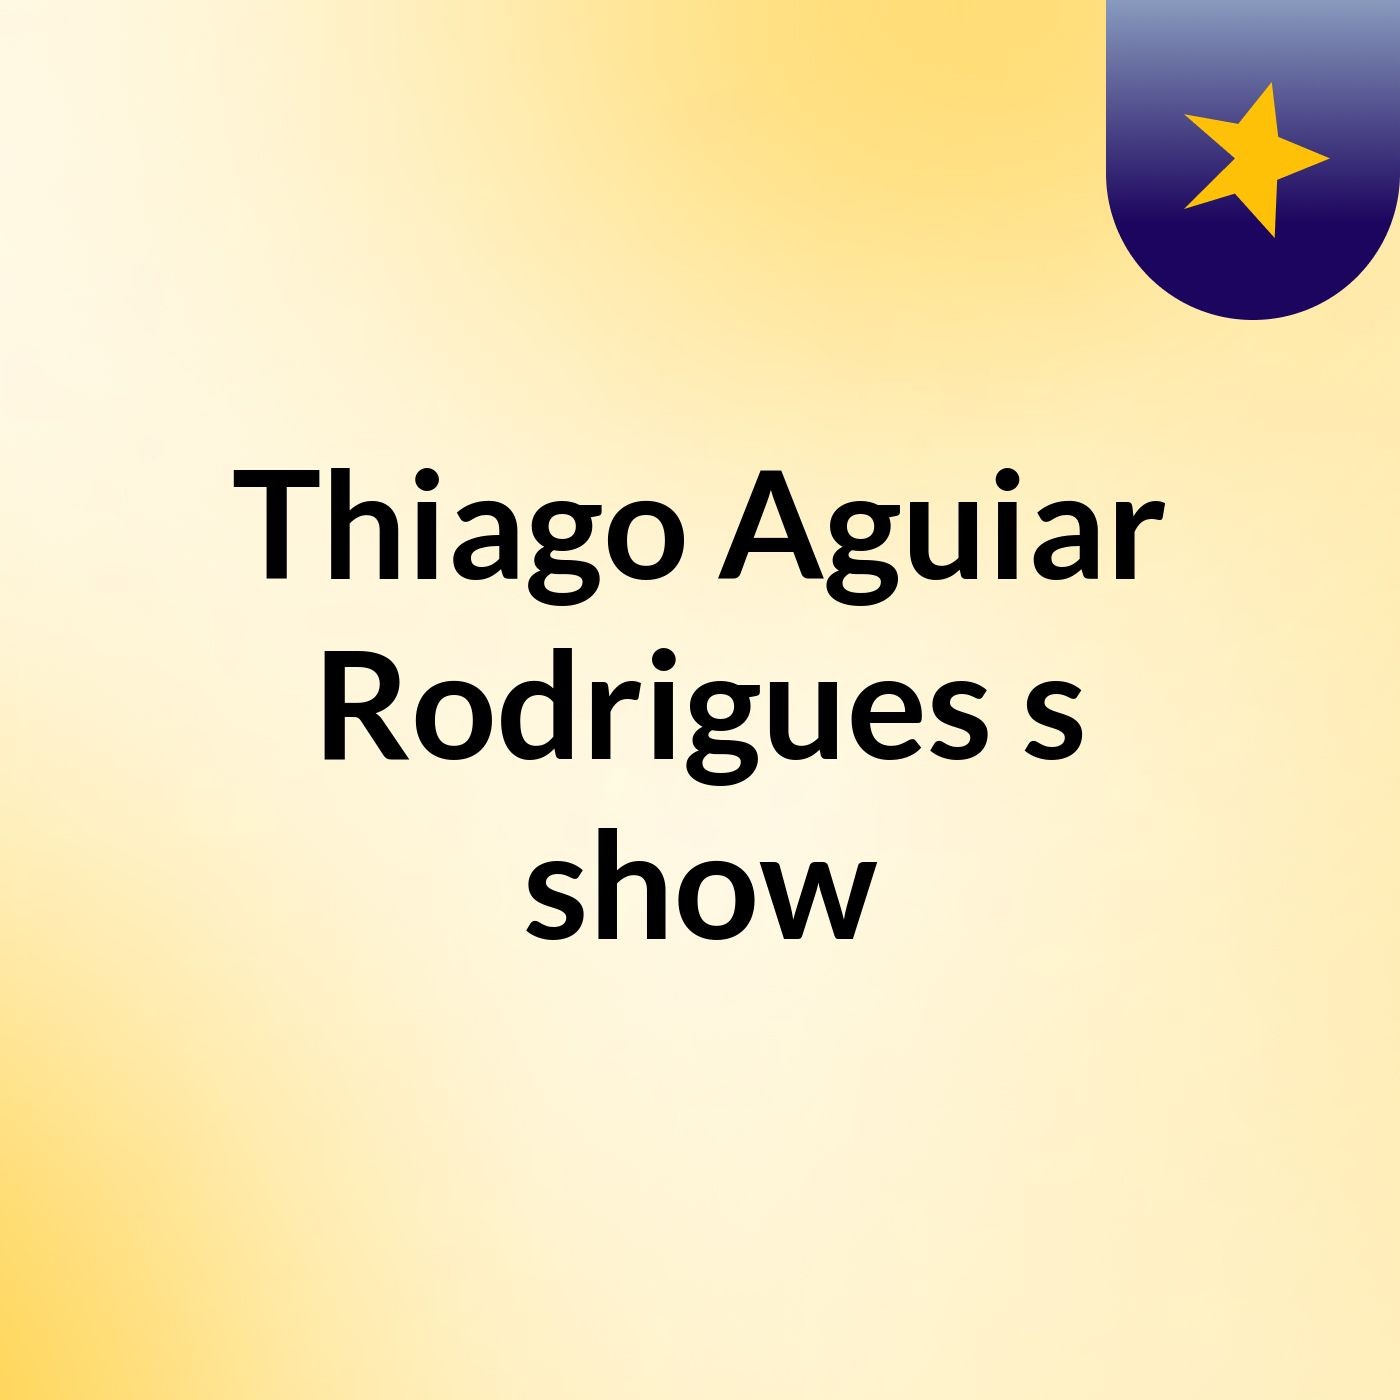 Thiago Aguiar Rodrigues's show